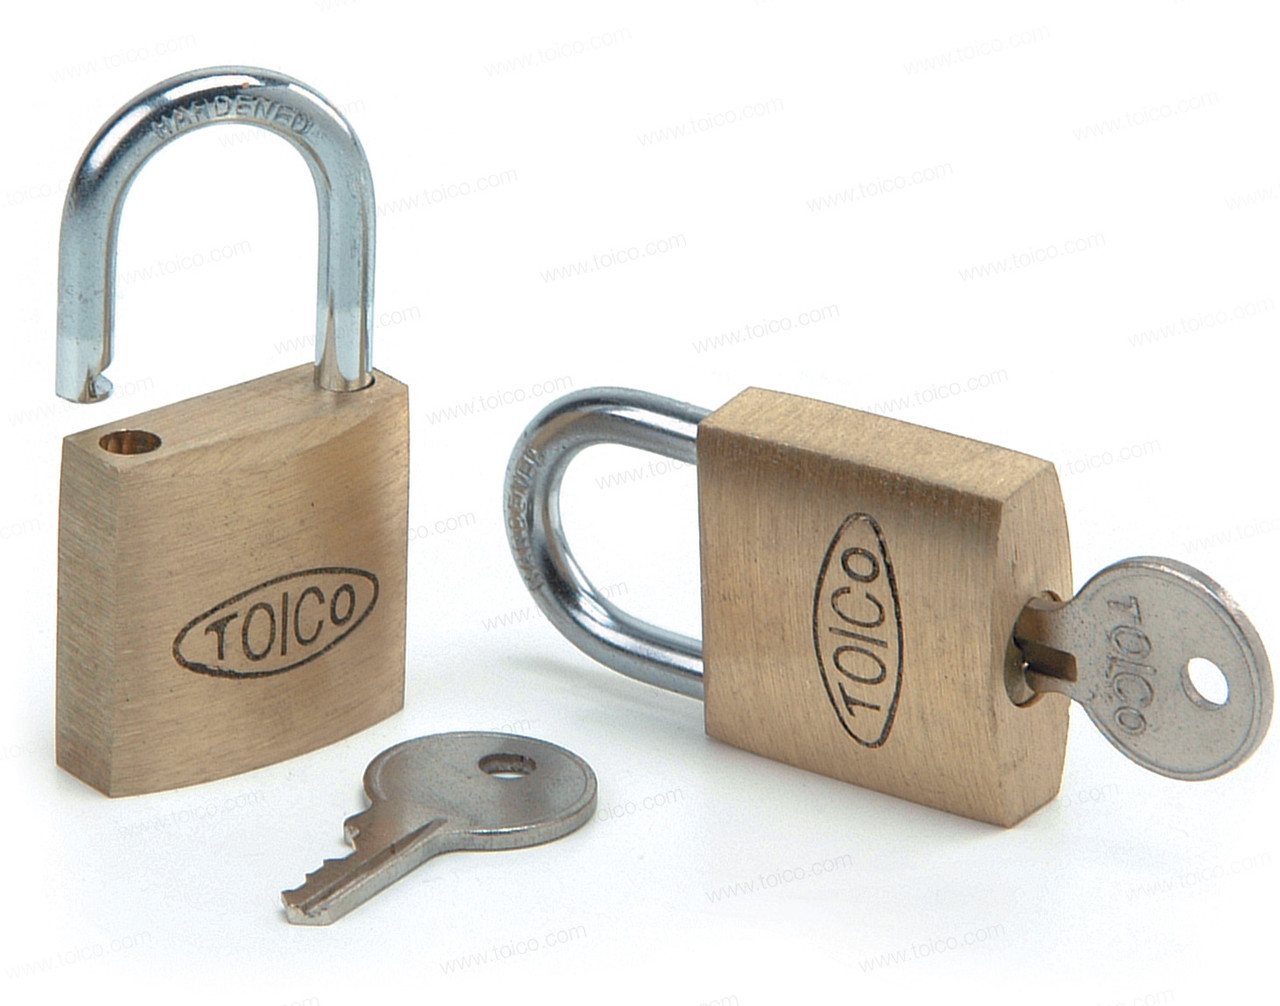 TOICO Padlock & Key 25mm all keyed alike - Toico Industries